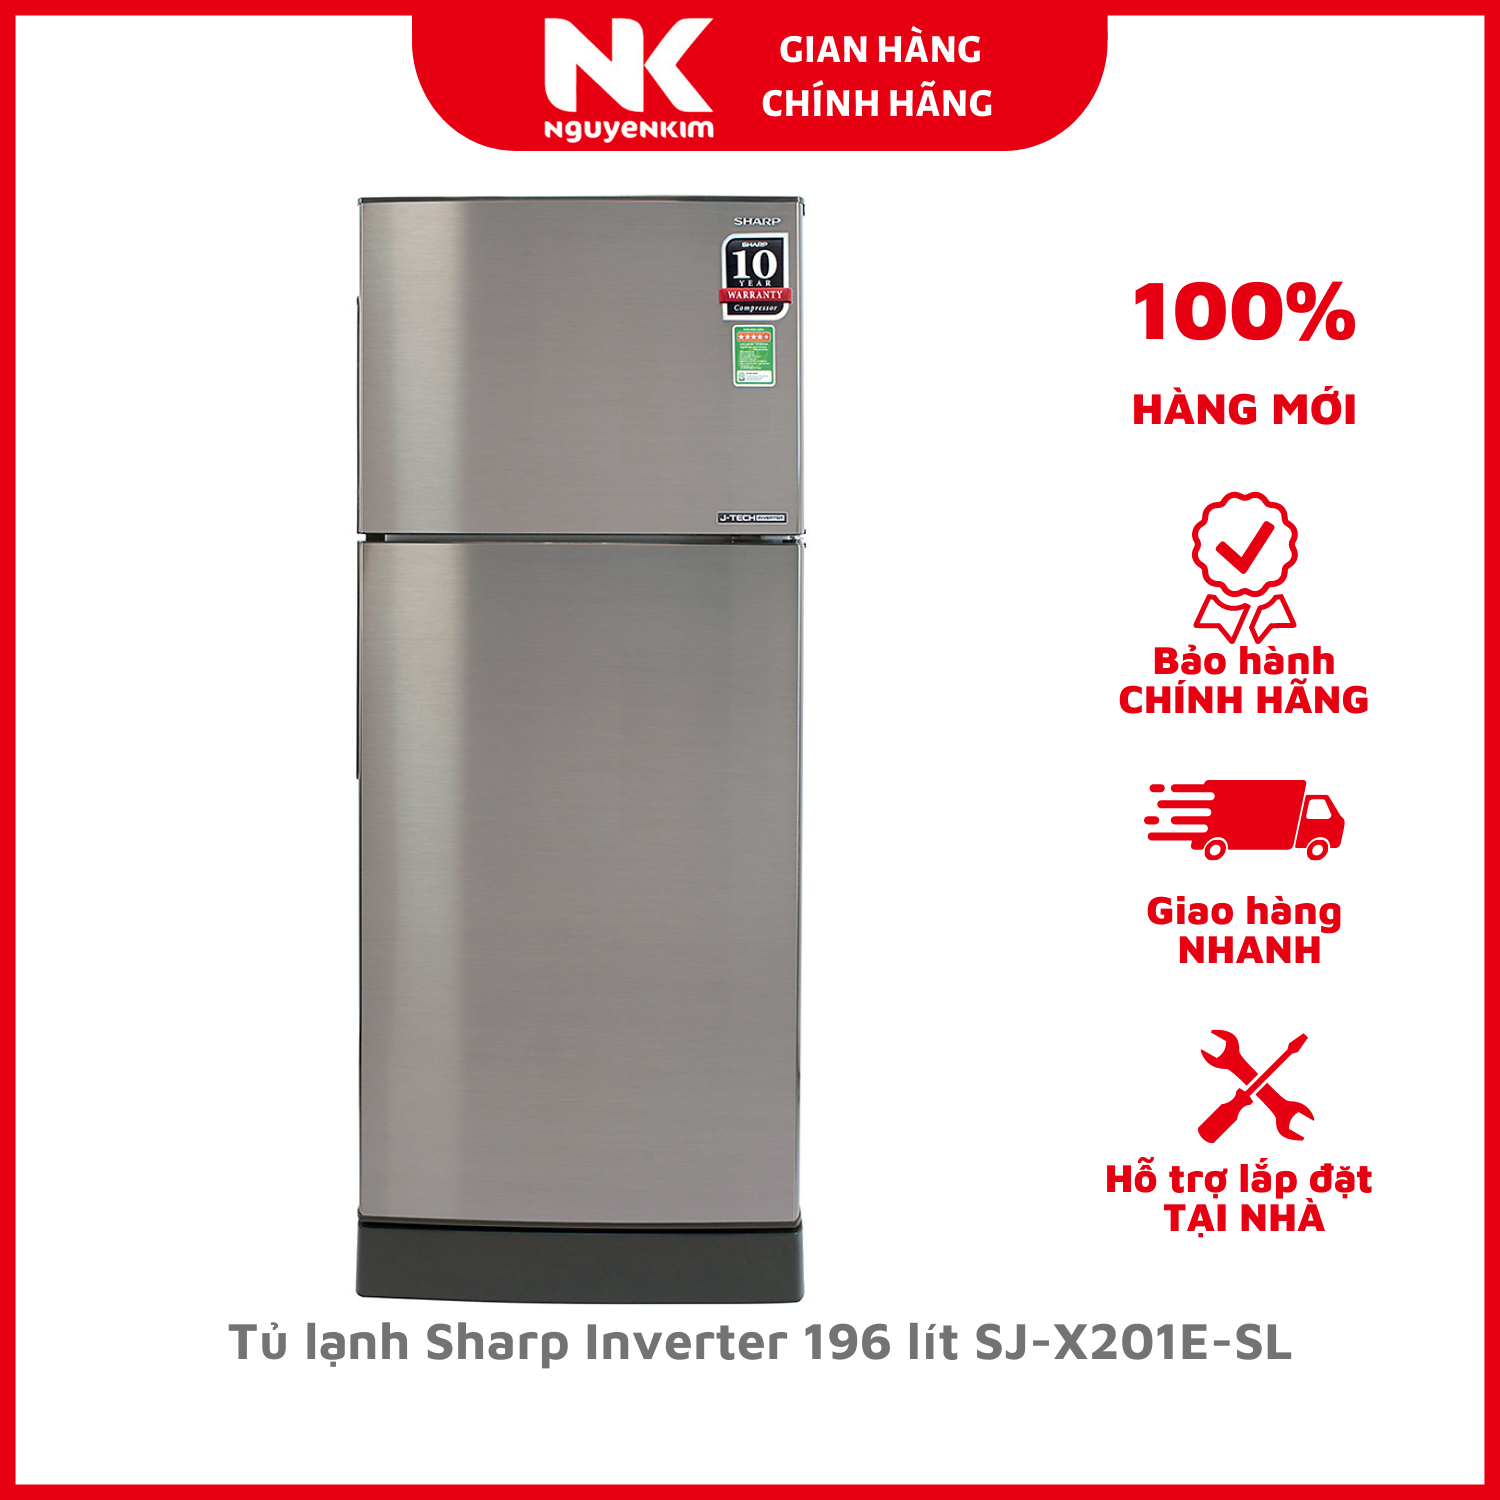 Tủ lạnh Sharp Inverter 196 lít SJ-X201E-SL - Hàng Chính Hãng [Giao hàng toàn quốc]